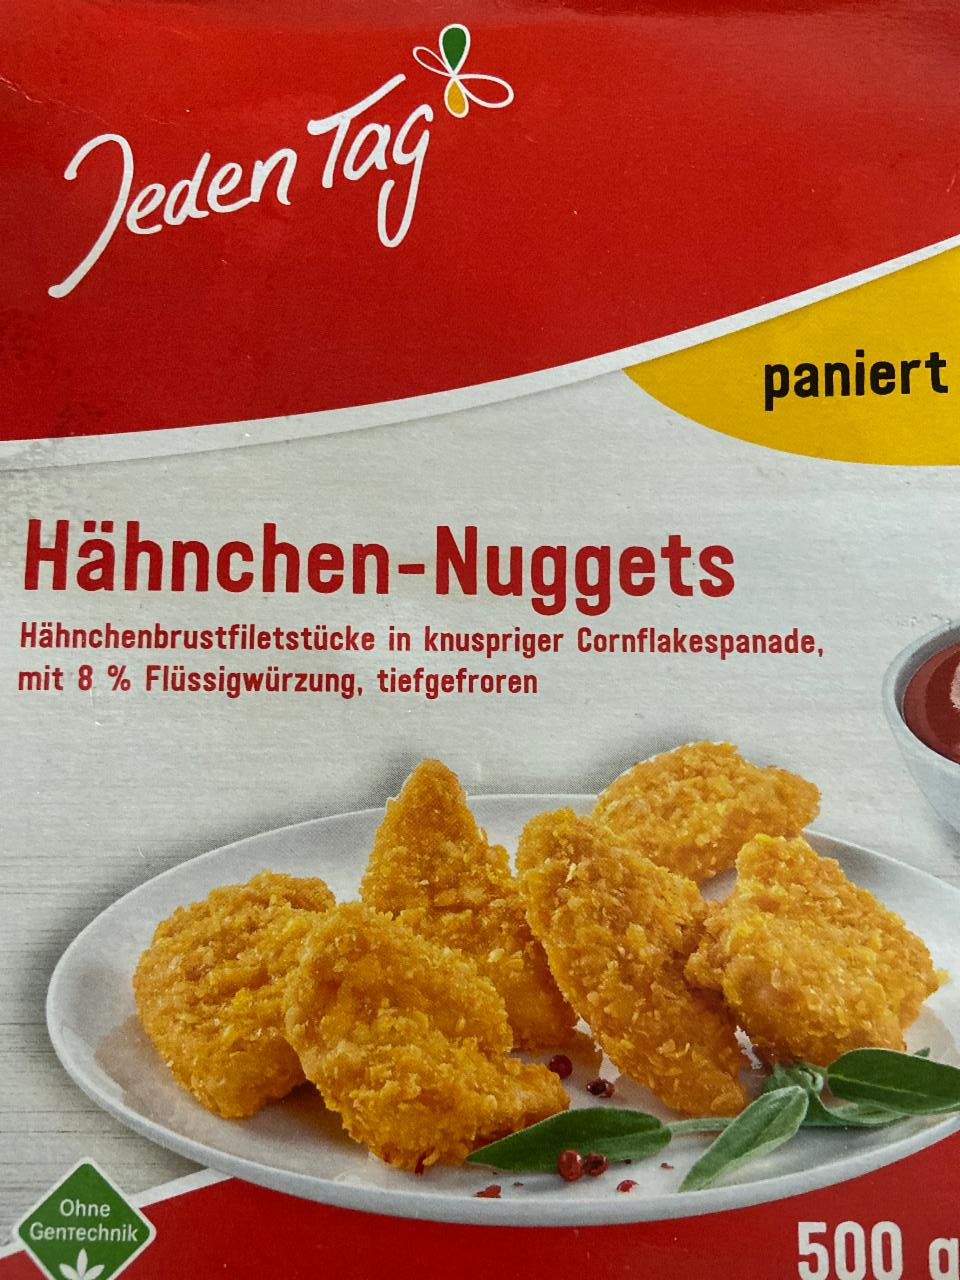 Fotografie - Hähnchen-nuggets Jeden Tag